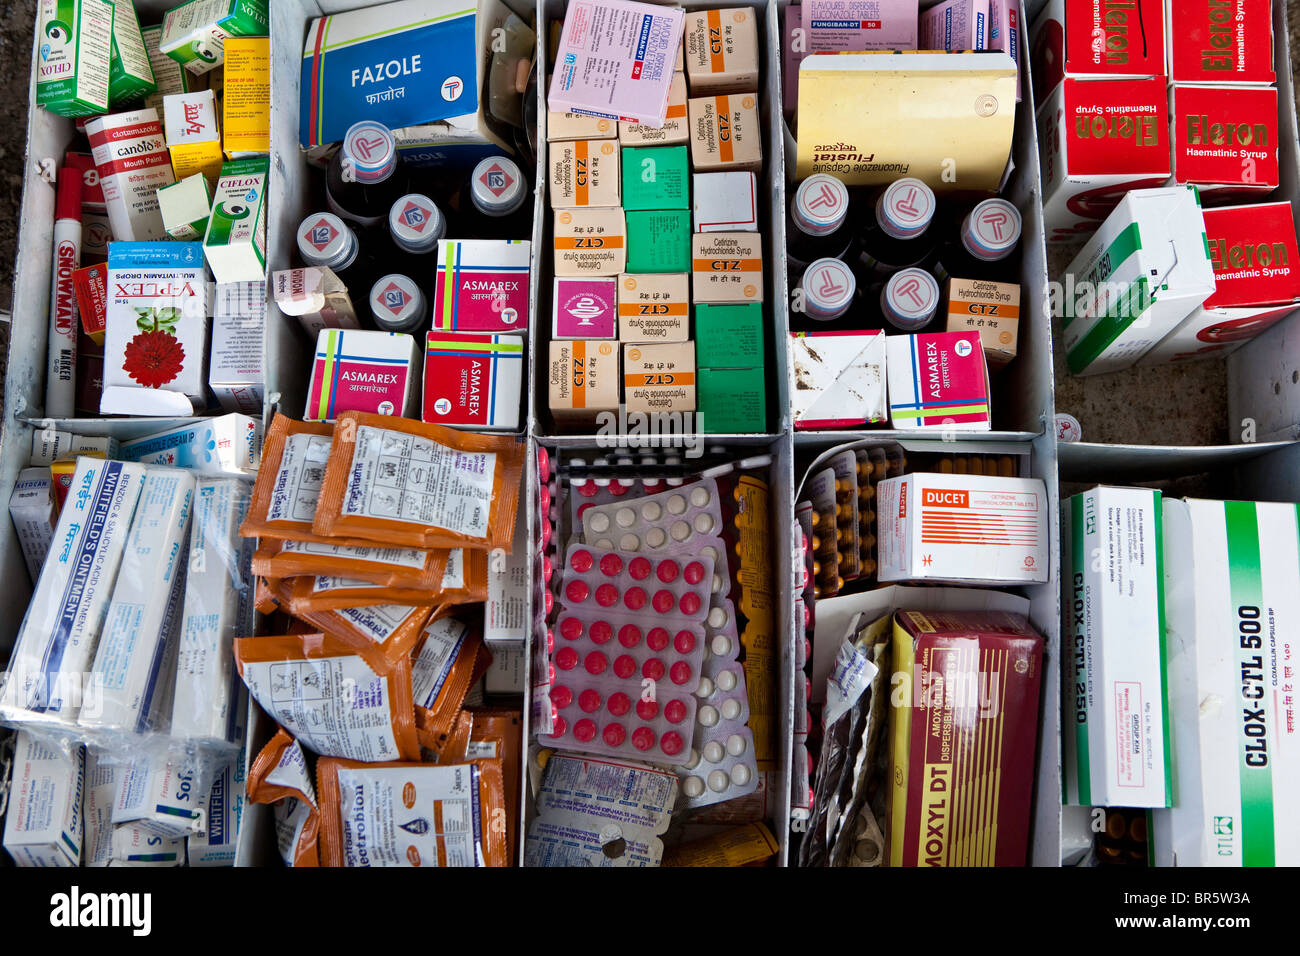 El cuadro de medicamentos utilizados por el sistema de bienestar infantil en Nepal. Foto de stock